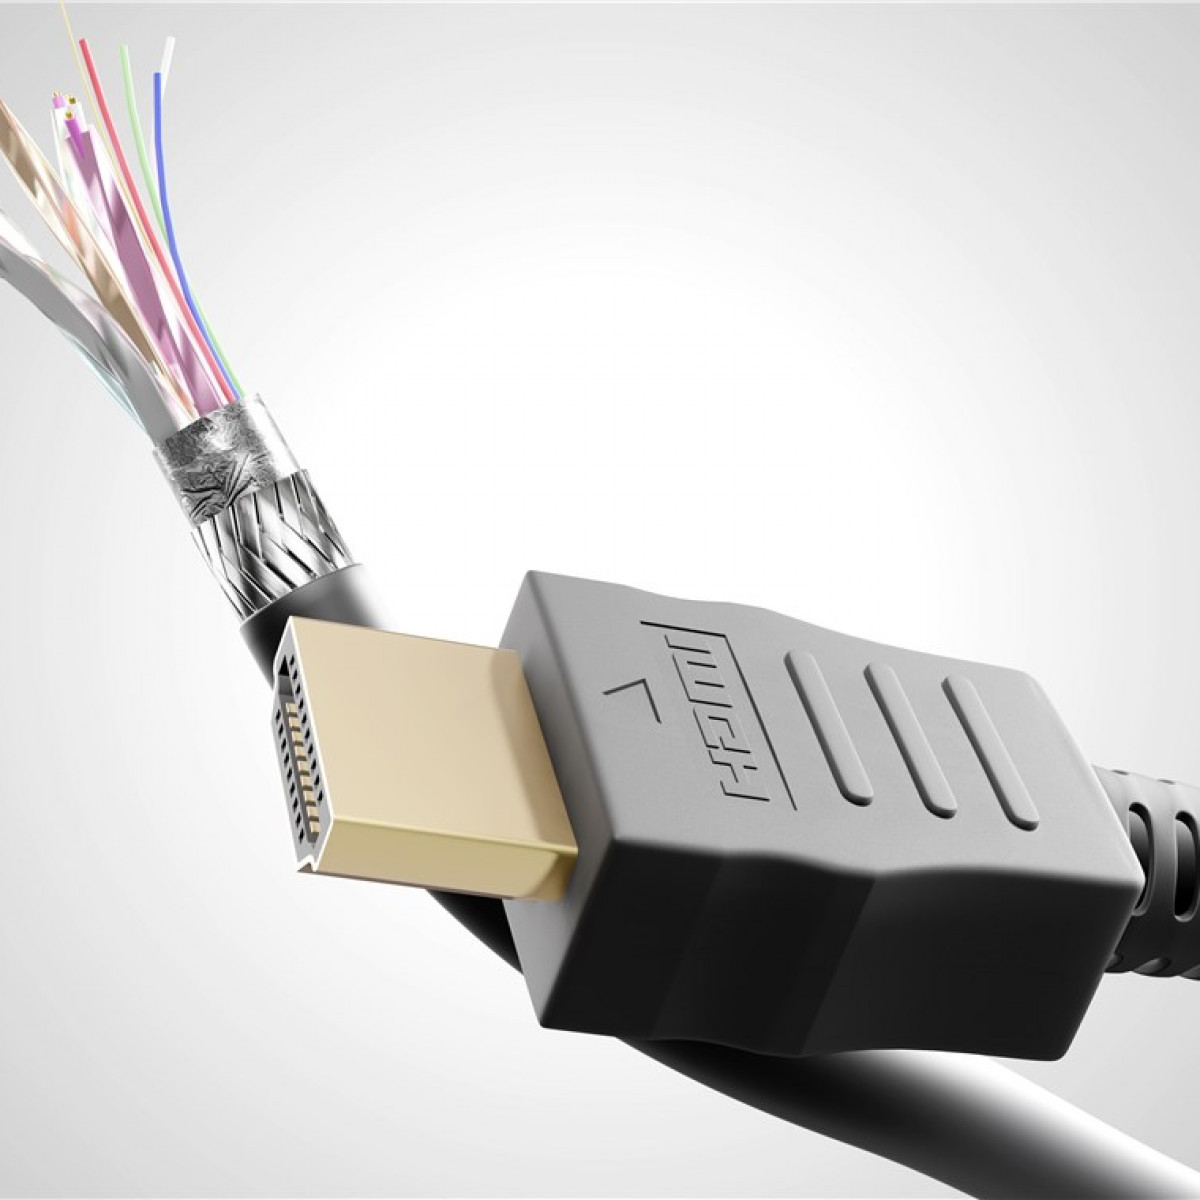 GOOBAY High-Speed-HDMI™-Kabel Ethernet HDMI Kabel mit